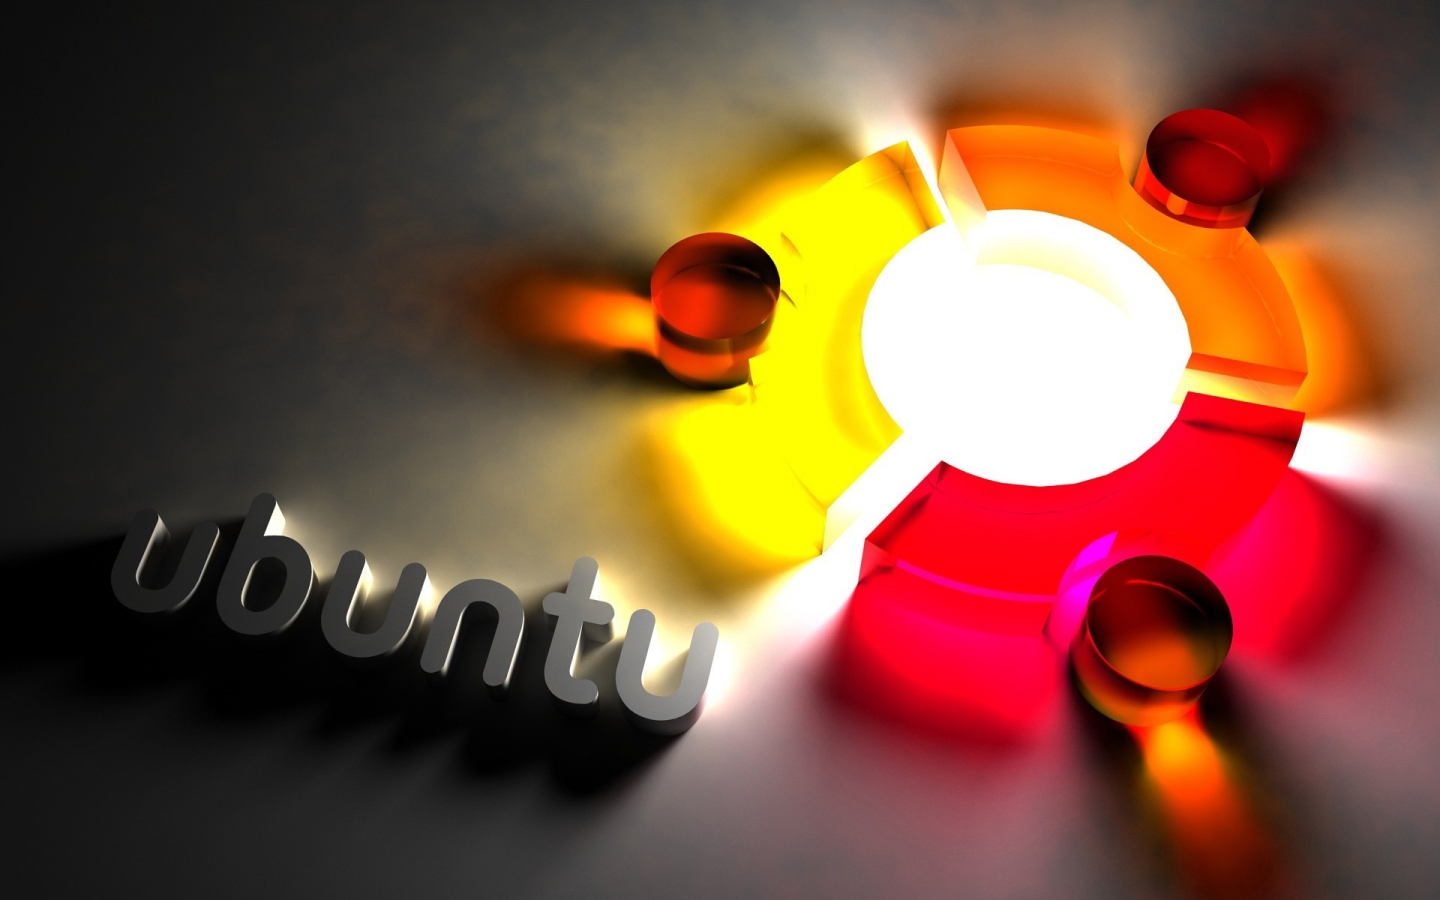 Ubuntu Cool Logo for 1440 x 900 widescreen resolution